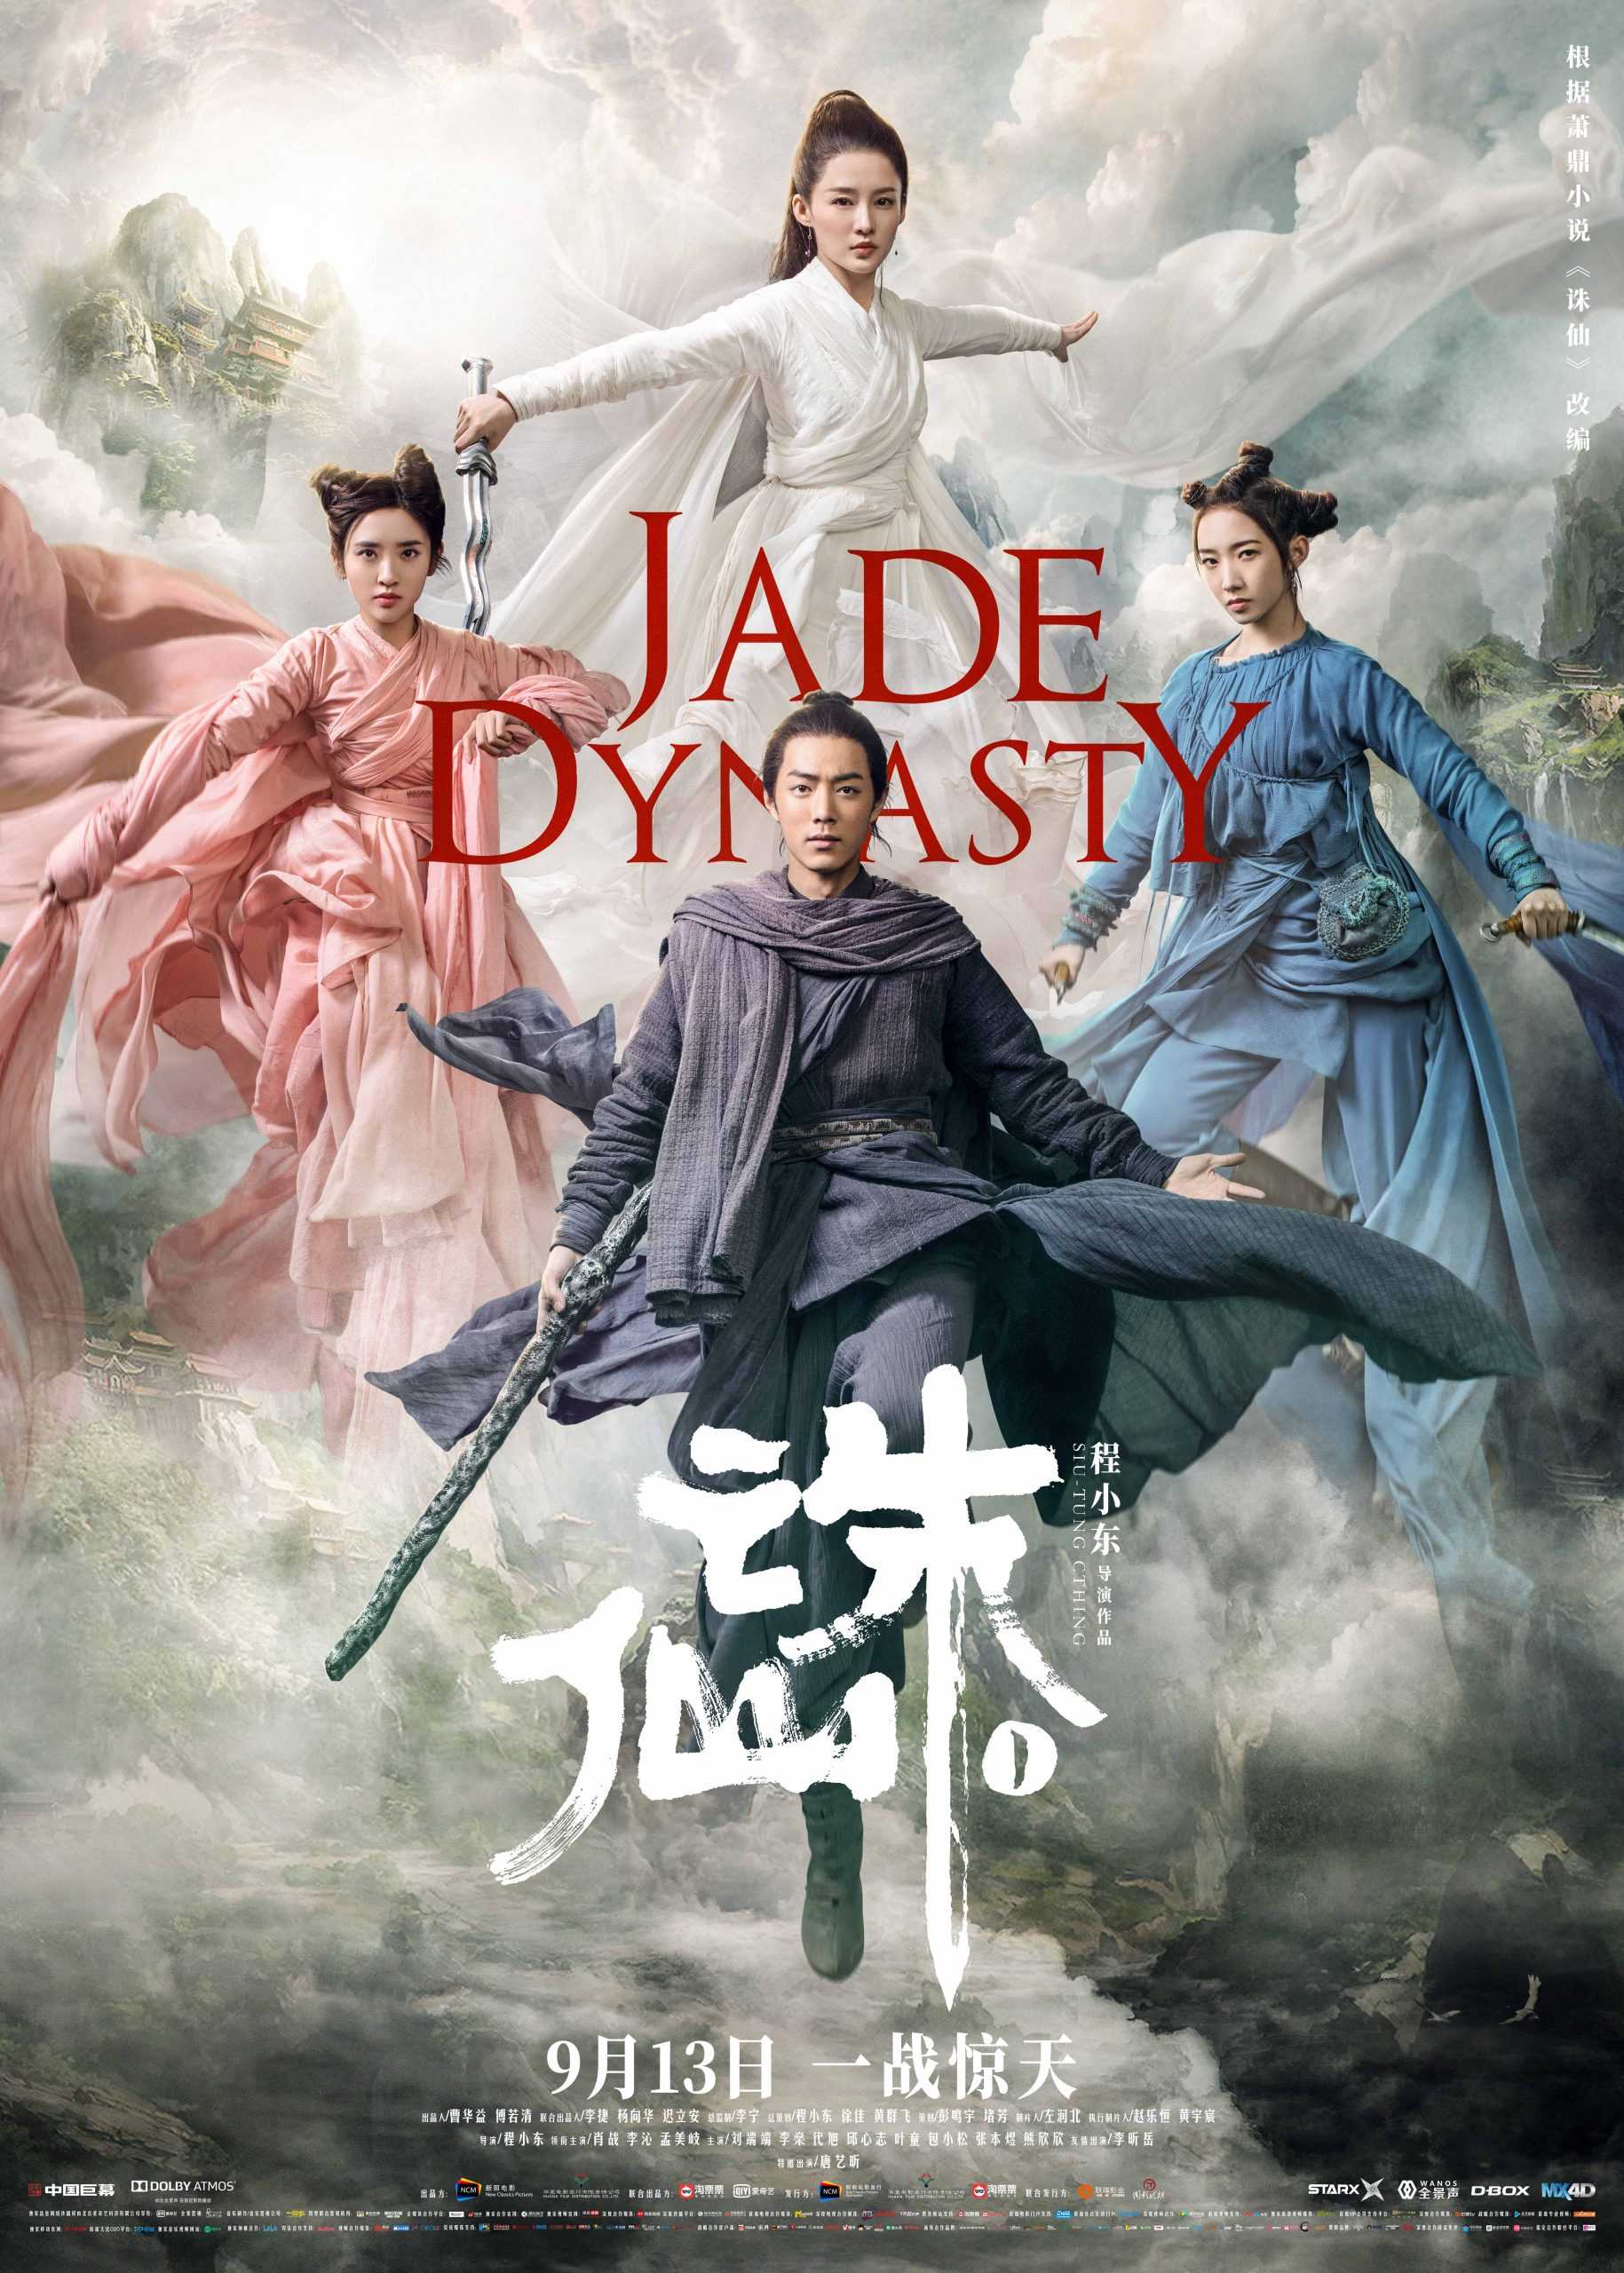 مشاهدة فيلم Jade Dynasty 2019 مترجم